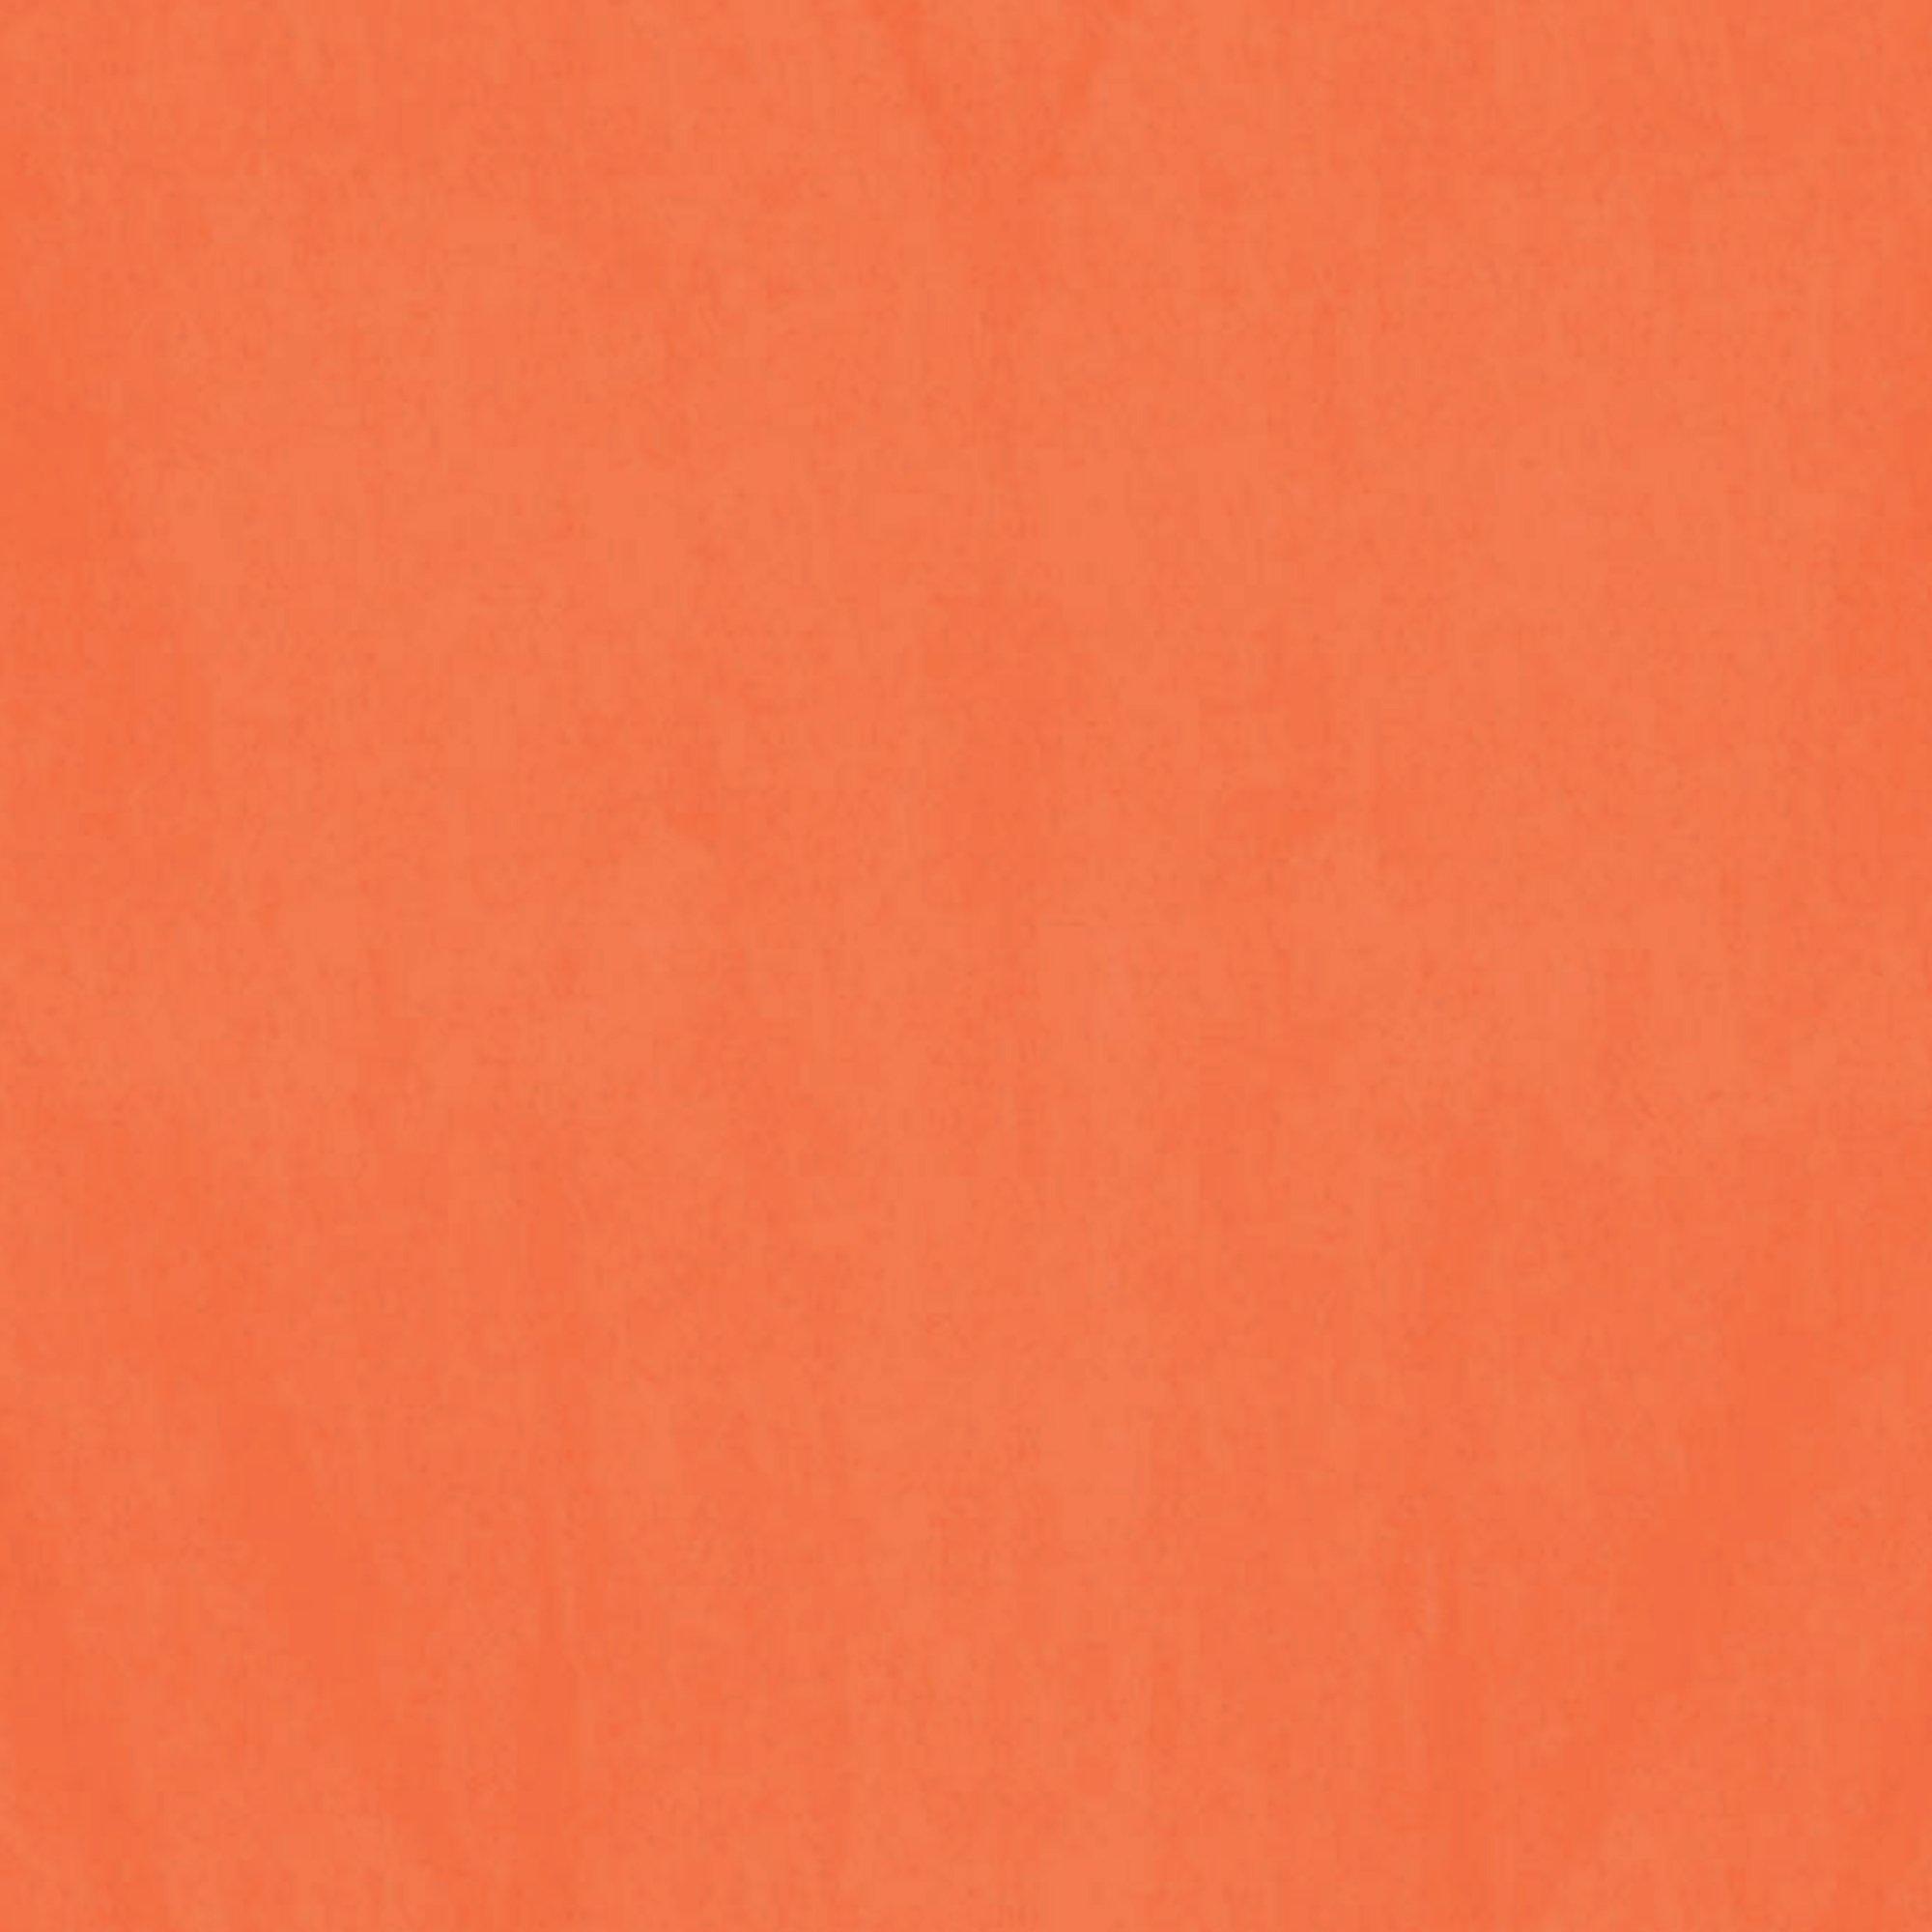 Burnt Orange SatinWrap Solid Color Tissue Paper - 20 x 30 - 480